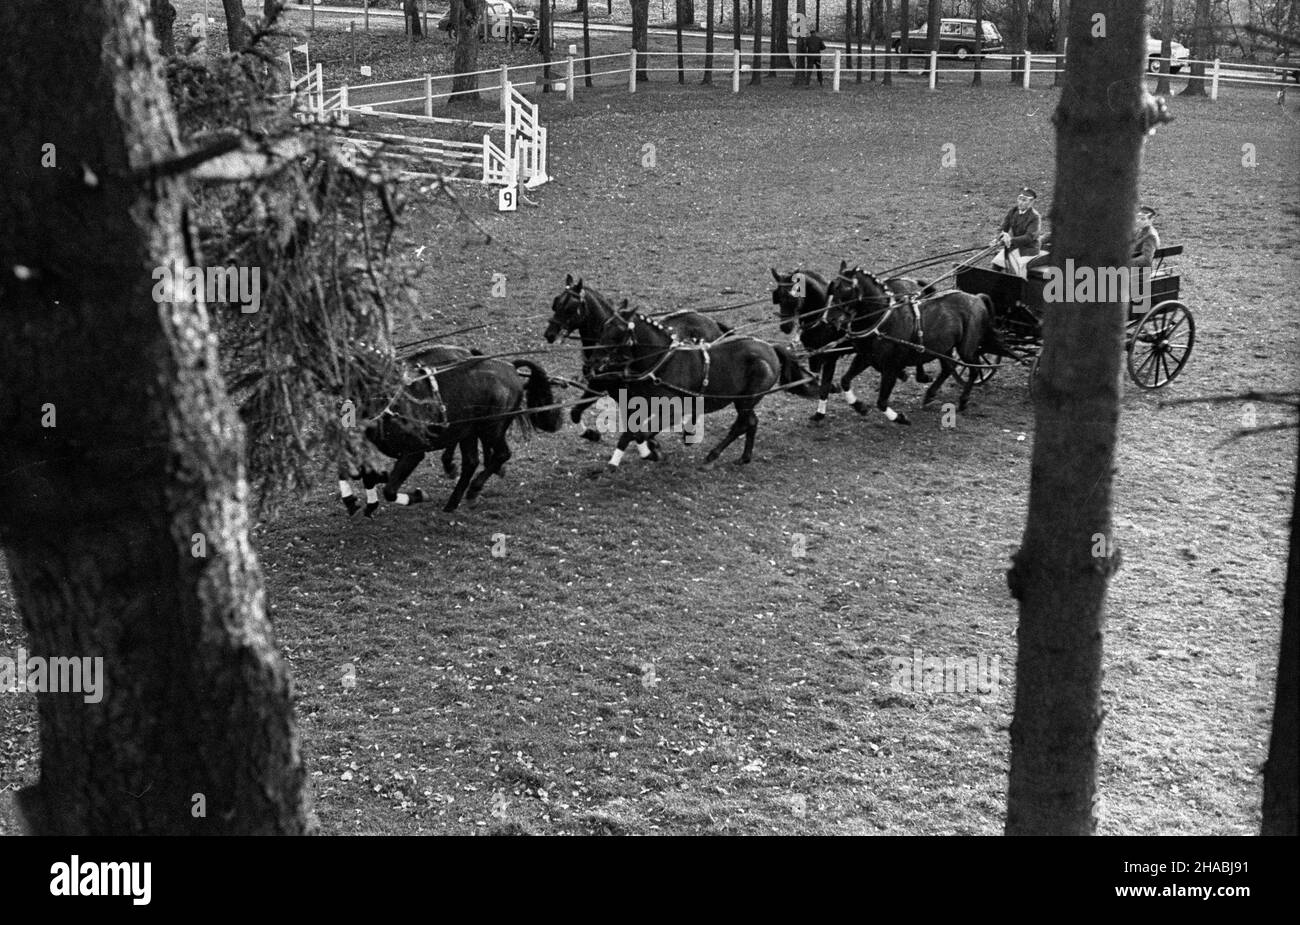 Starogard Gdañski, 1969-10-28. Aukcja koni czystej krwi arabskiej w Pañstwowym Stadzie Ogierów (PSO) w Starogardzie Gdañskim, zorganizowana w dniach 28 - 29 paŸdziernika 1969 r. Nz. jeden z zabytkowych powozów prezentowanych w pierwszym dniu aukcji. mb  PAP/Zbigniew Staszyszyn      Starogard Gdanski, Oct. 28, 1969. Auction of Arab horses organised in the State Stallion Stud in Starogard Gdanski on Oct. 28 to 29, 1969. Pictured: a historical carriage presented on the first day of the auction.   mb  PAP/Zbigniew Staszyszyn Stock Photo